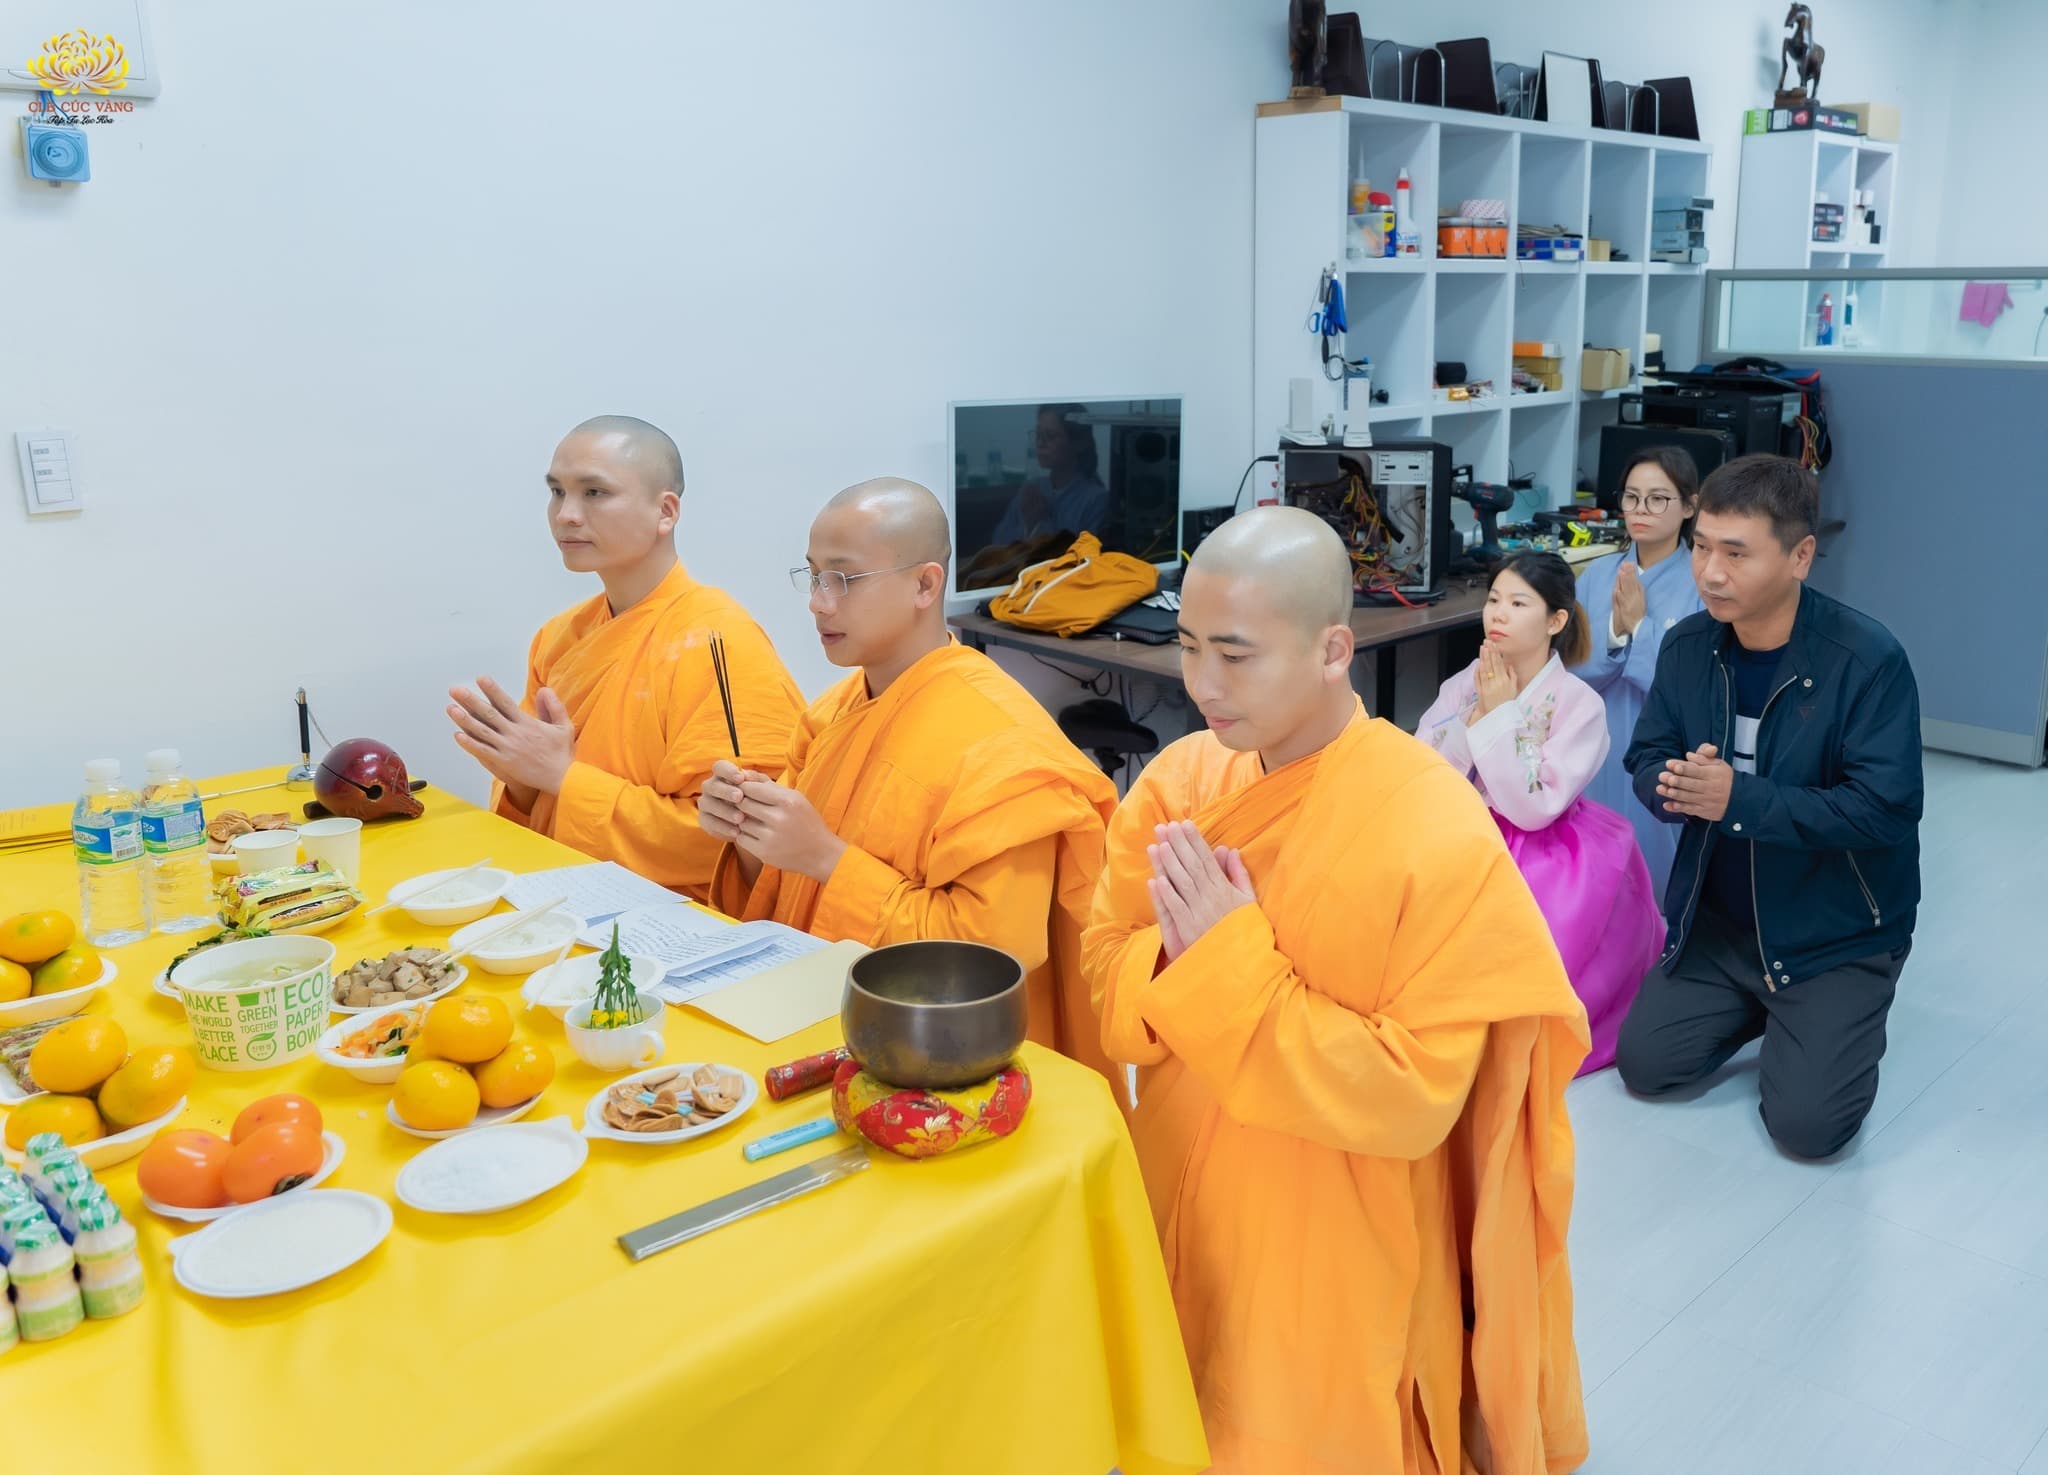 Thể theo lời thỉnh cầu của Phật tử và theo sự chỉ dạy của Sư Phụ, chư tôn đức Tăng đã tác lễ cầu an và cúng thí thực tại cửa hàng sửa máy tính của gia đình.